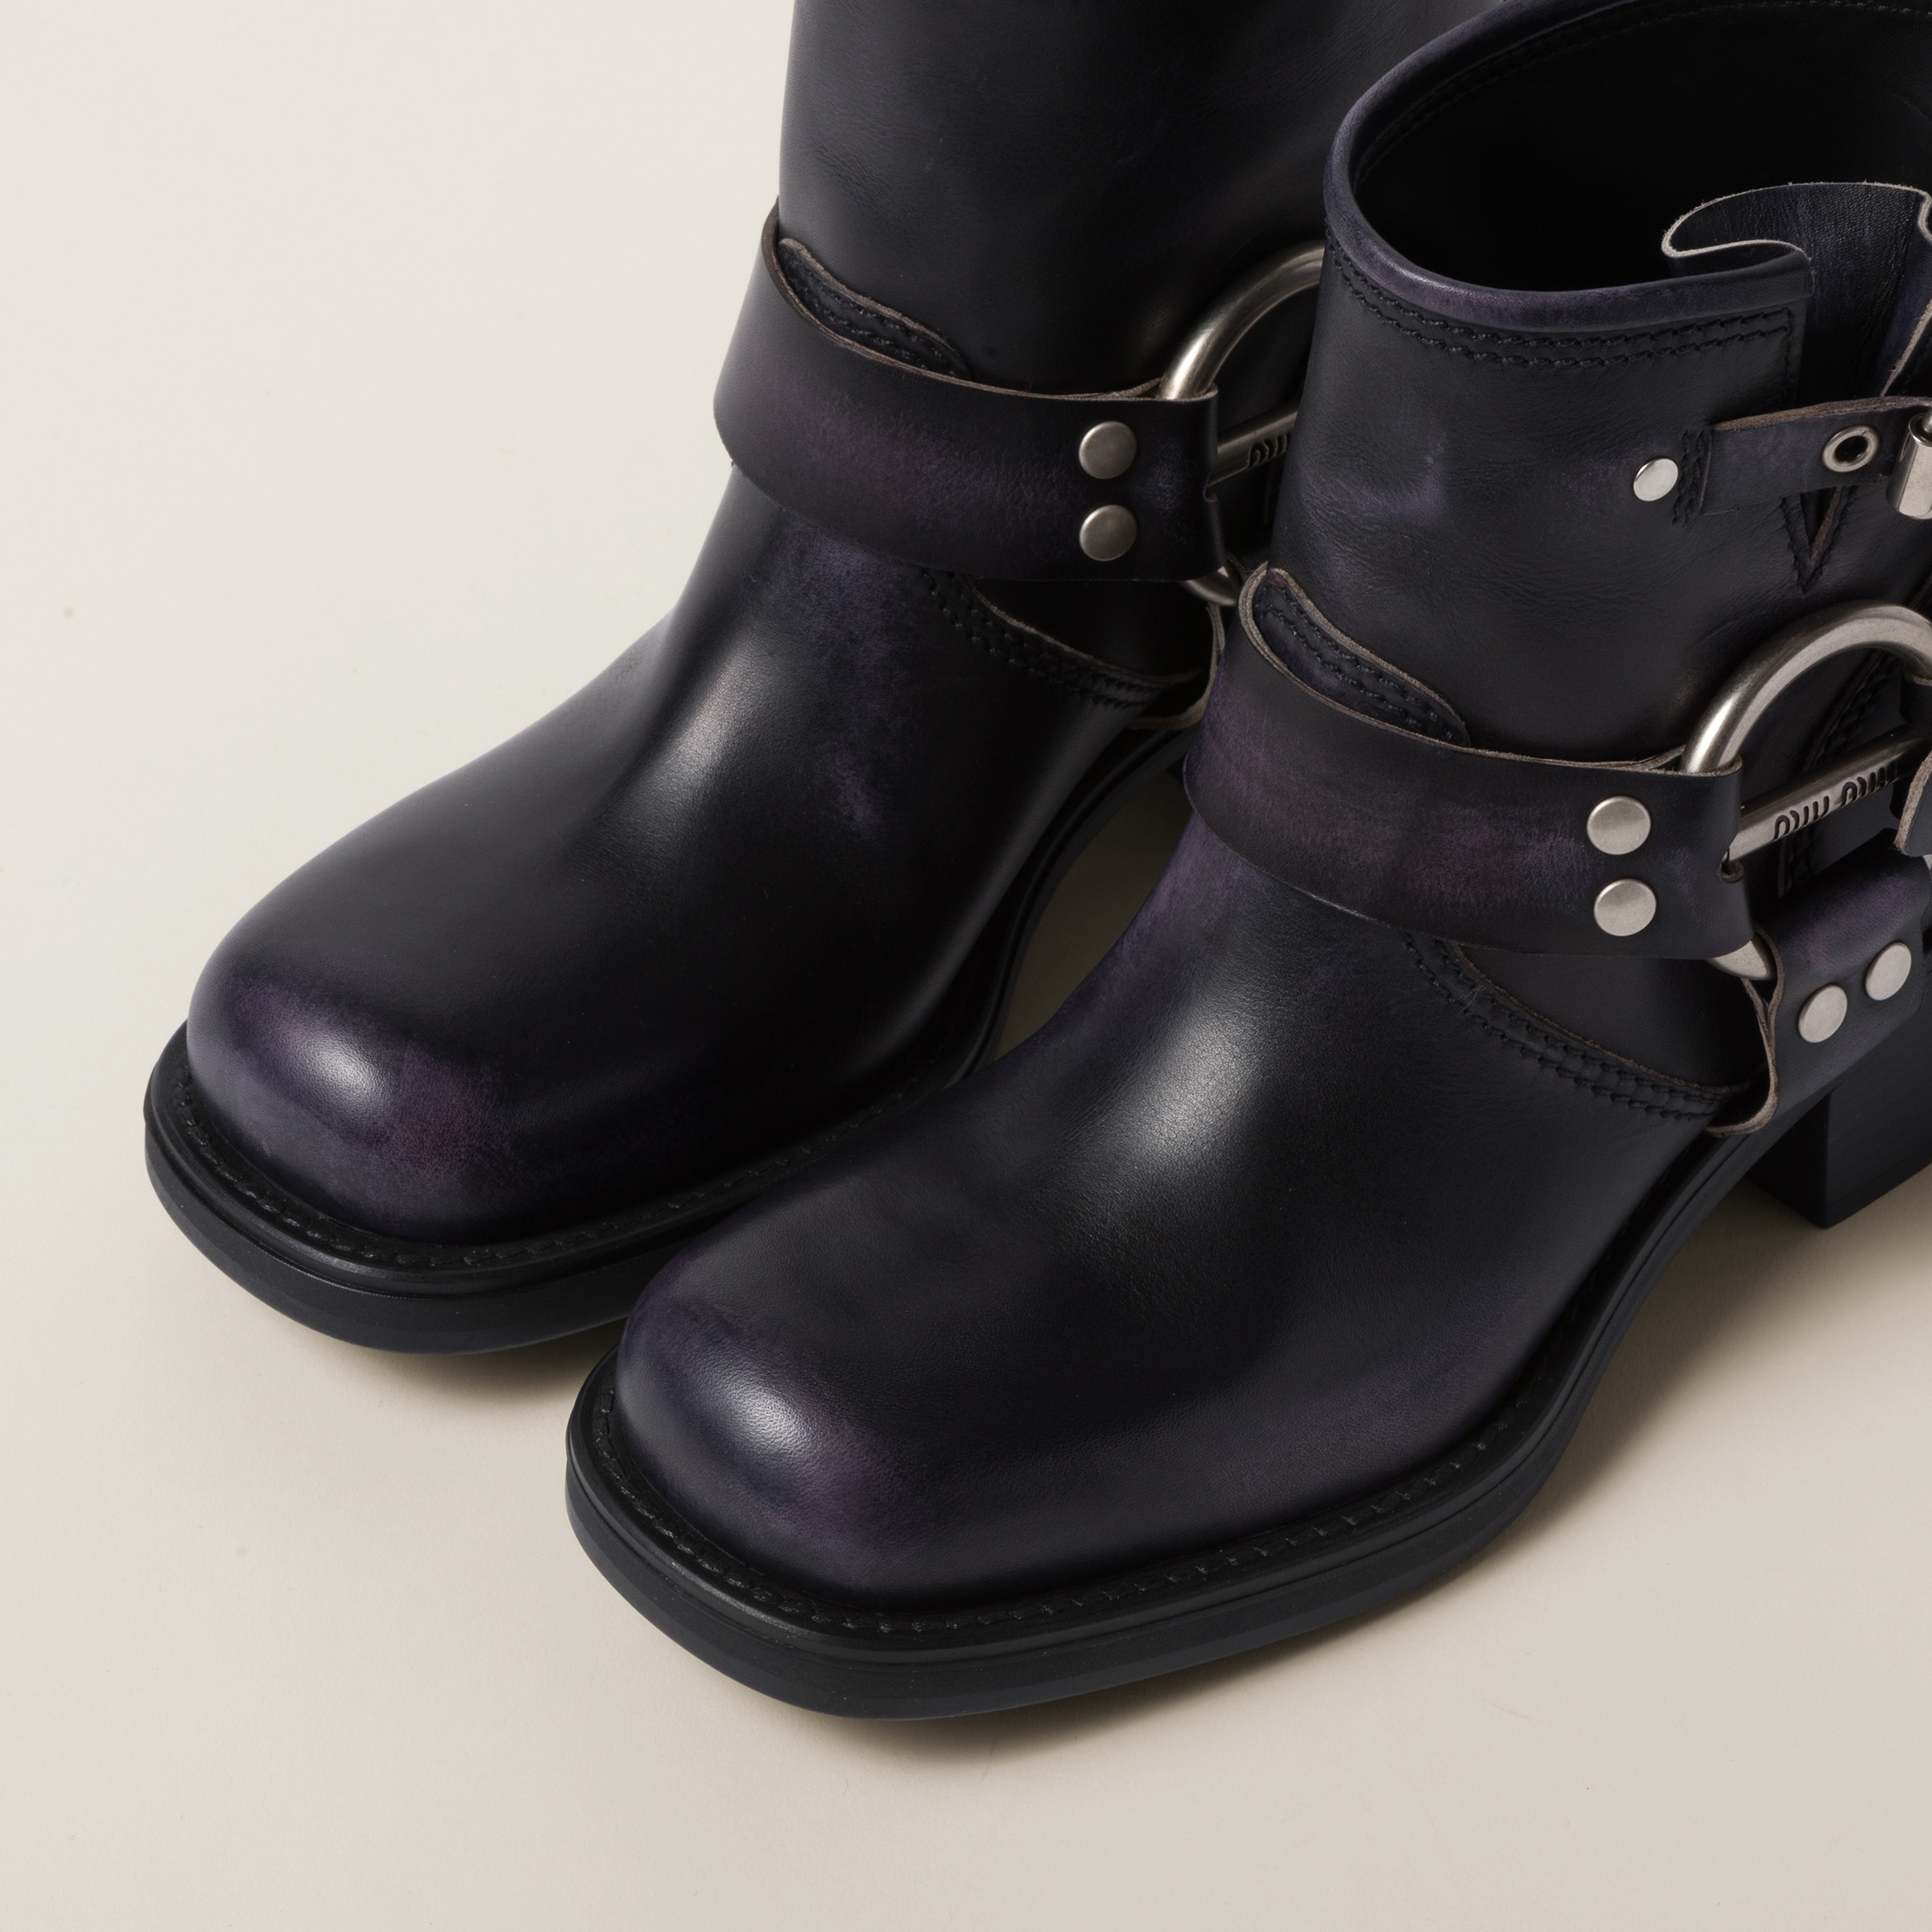 Vintage-look leather booties - 4